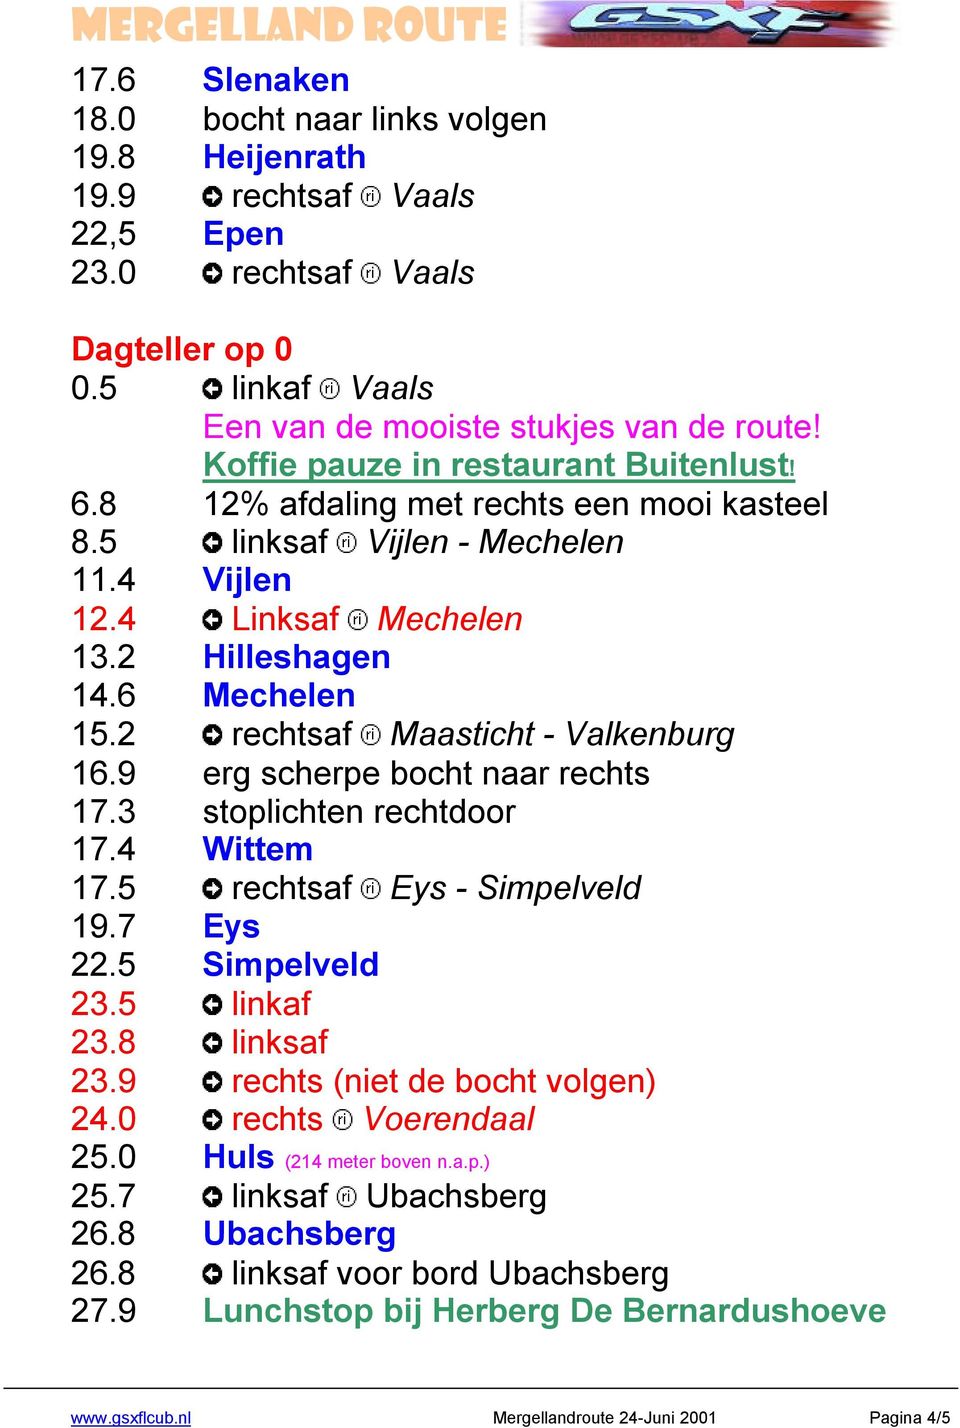 2 rechtsaf Maasticht - Valkenburg 16.9 erg scherpe bocht naar rechts 17.3 stoplichten rechtdoor 17.4 Wittem 17.5 rechtsaf Eys - Simpelveld 19.7 Eys 22.5 Simpelveld 23.5 linkaf 23.8 linksaf 23.